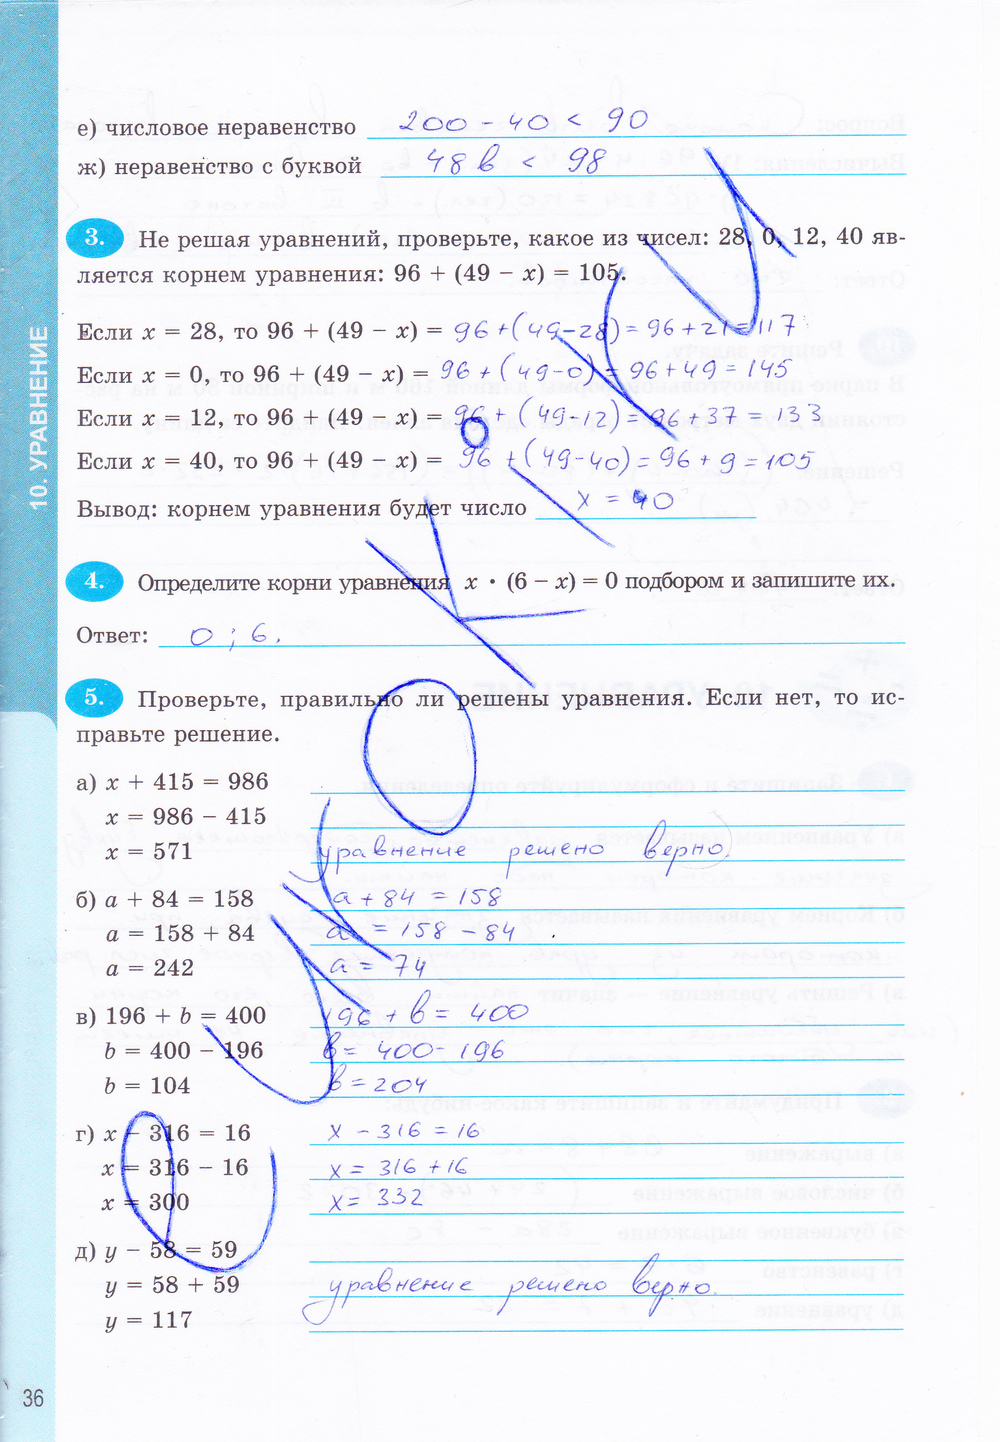 Посмотреть ответы к рабочей тетради по математике 5 класс ерина т.м